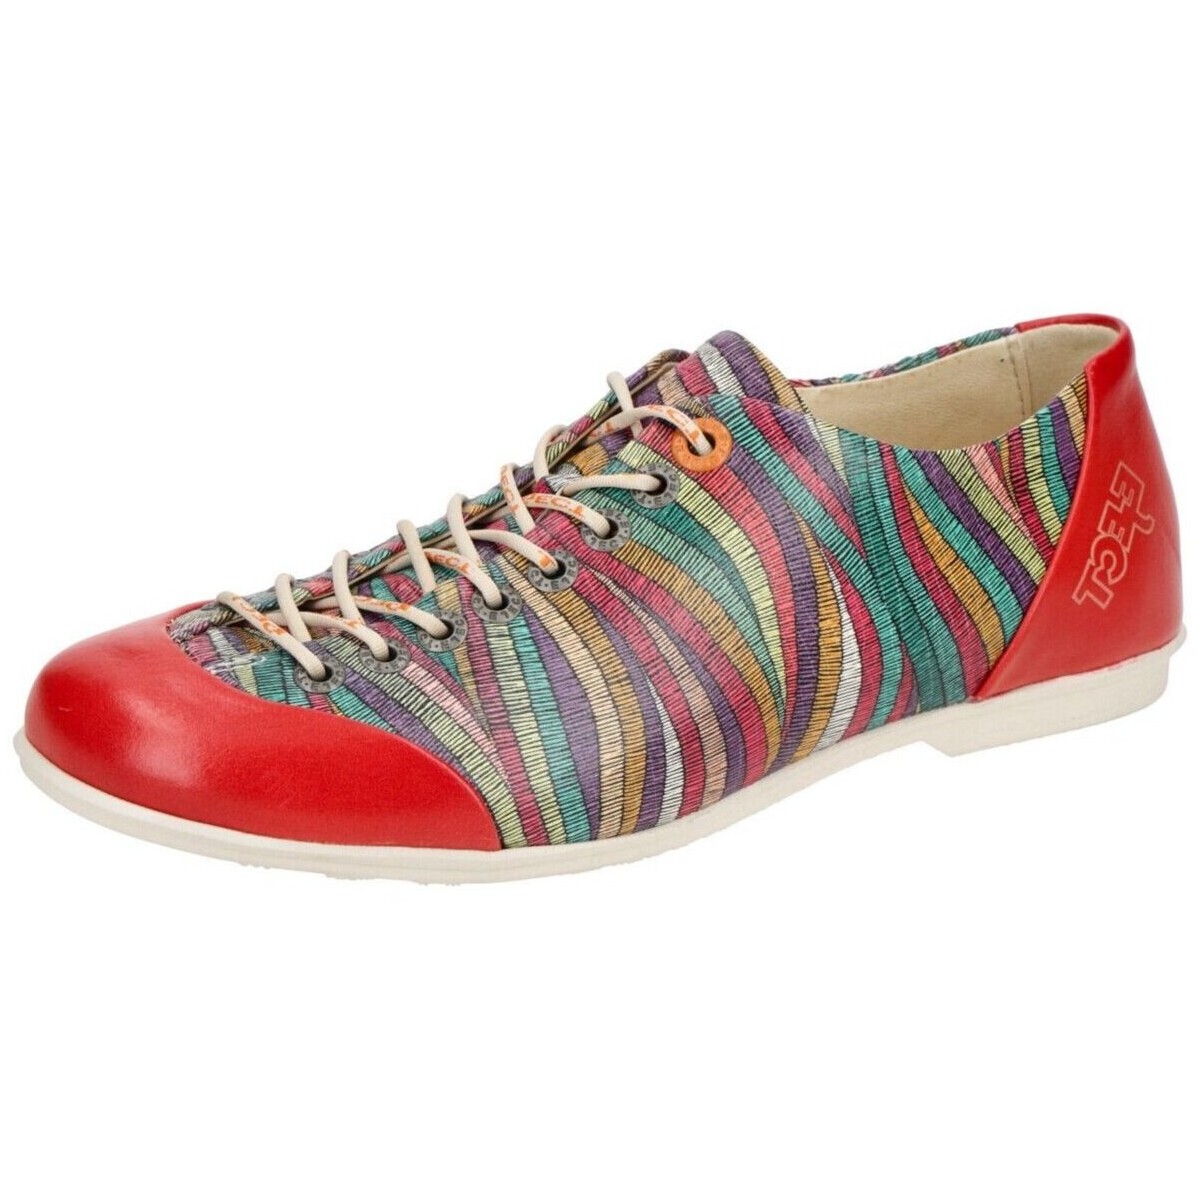 Chaussures Femme Produit vendu et expédié par  Multicolore